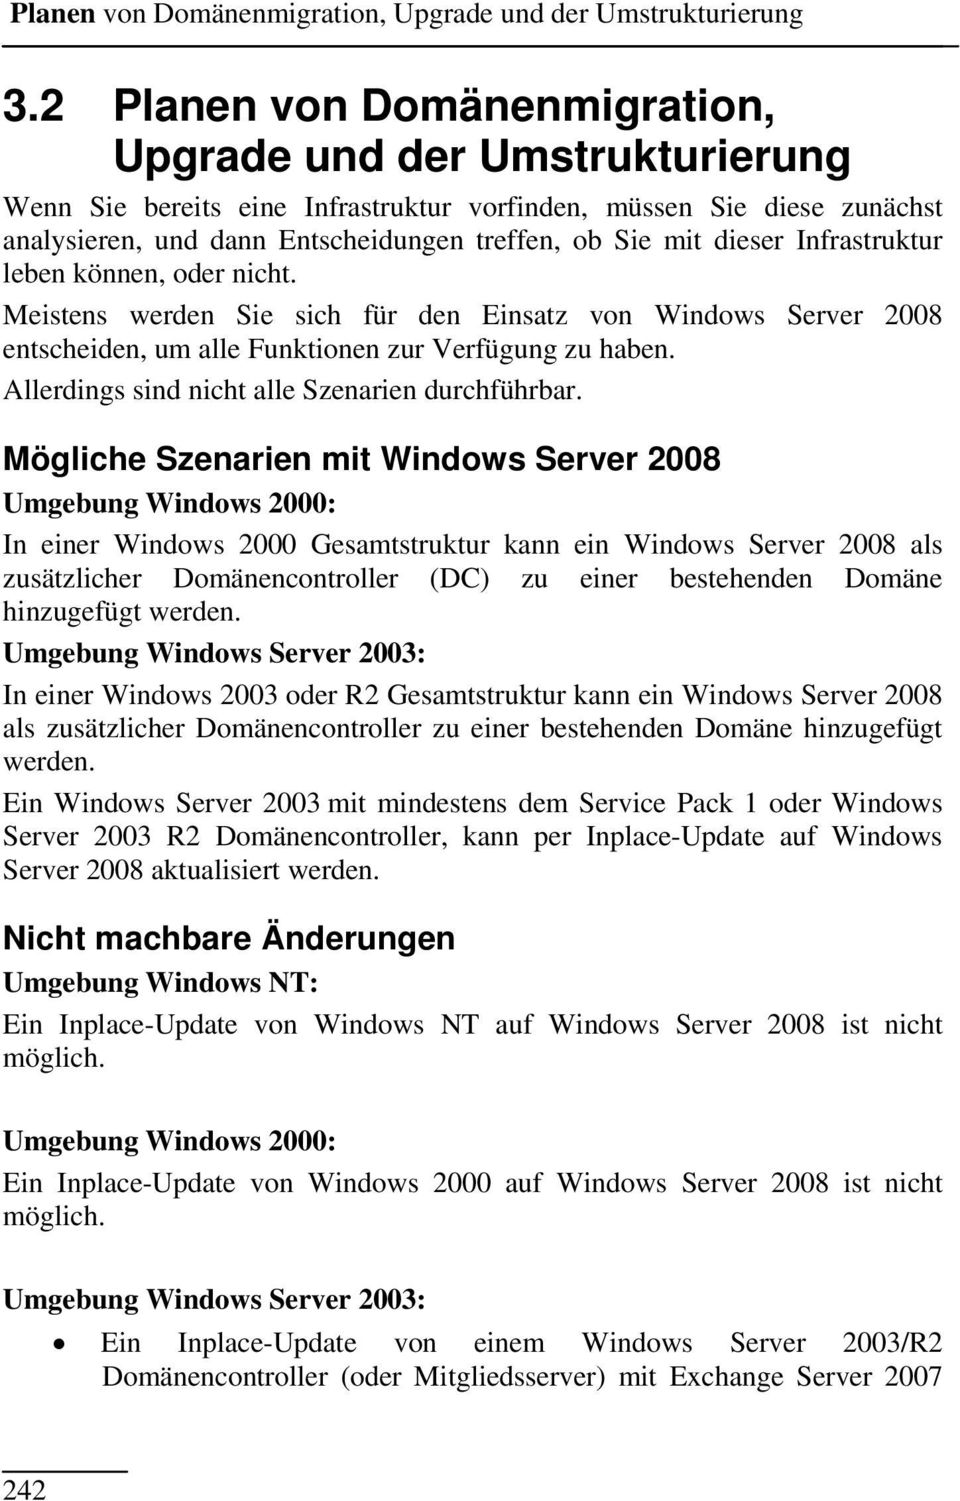 dieser Infrastruktur leben können, oder nicht. Meistens werden Sie sich für den Einsatz von Windows Server 2008 entscheiden, um alle Funktionen zur Verfügung zu haben.